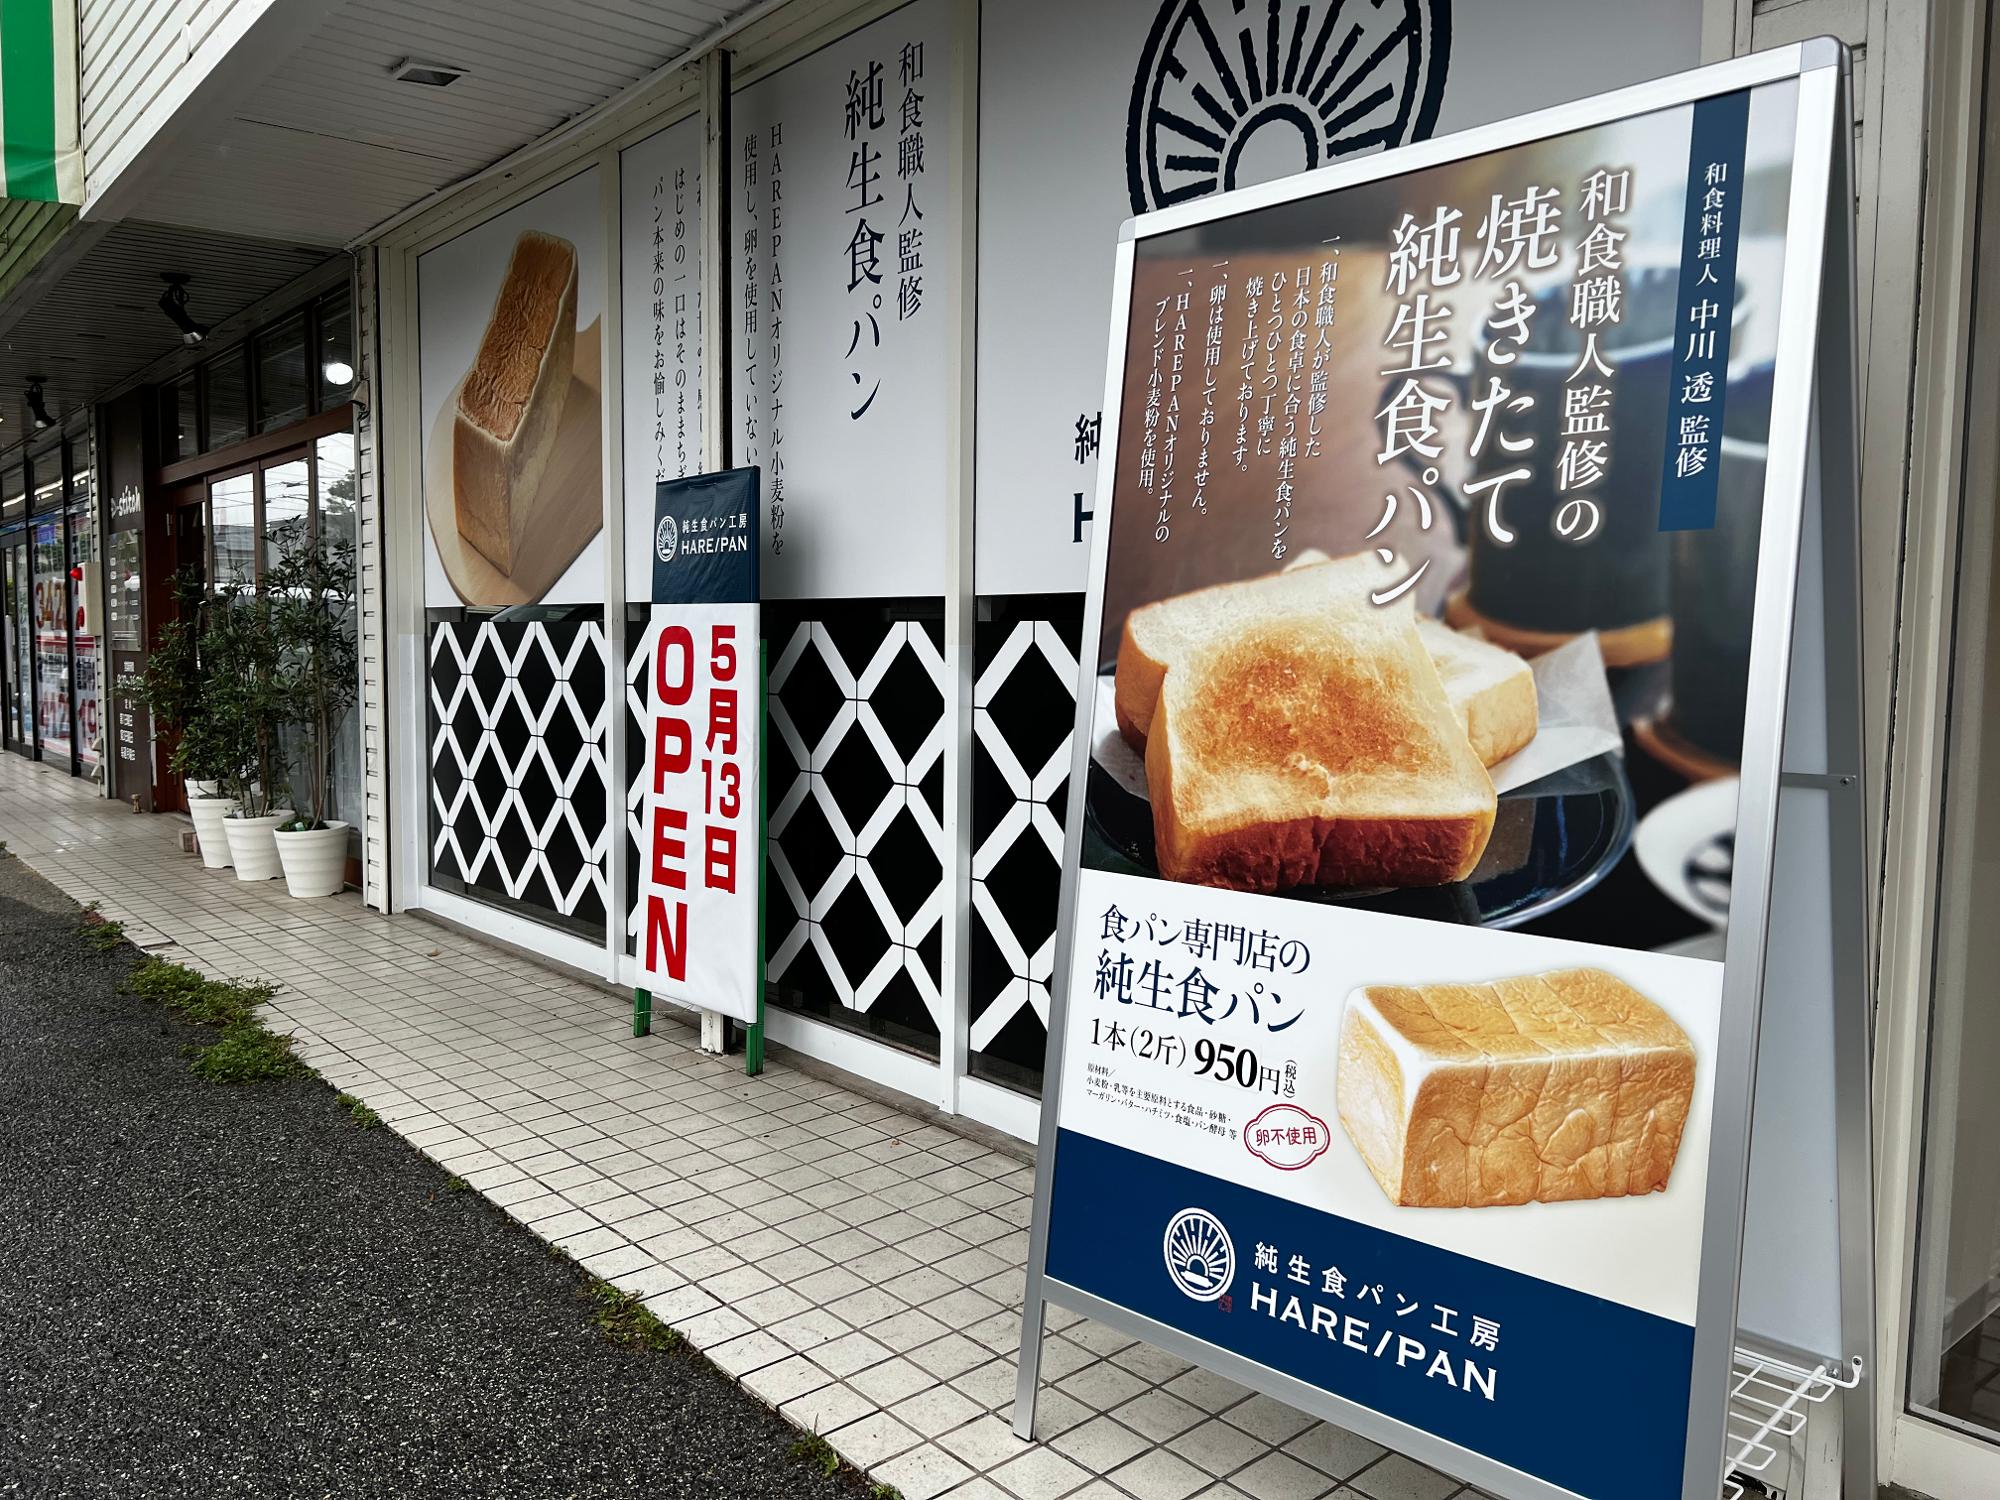 「純生食パン工房HARE/PAN」倉敷店